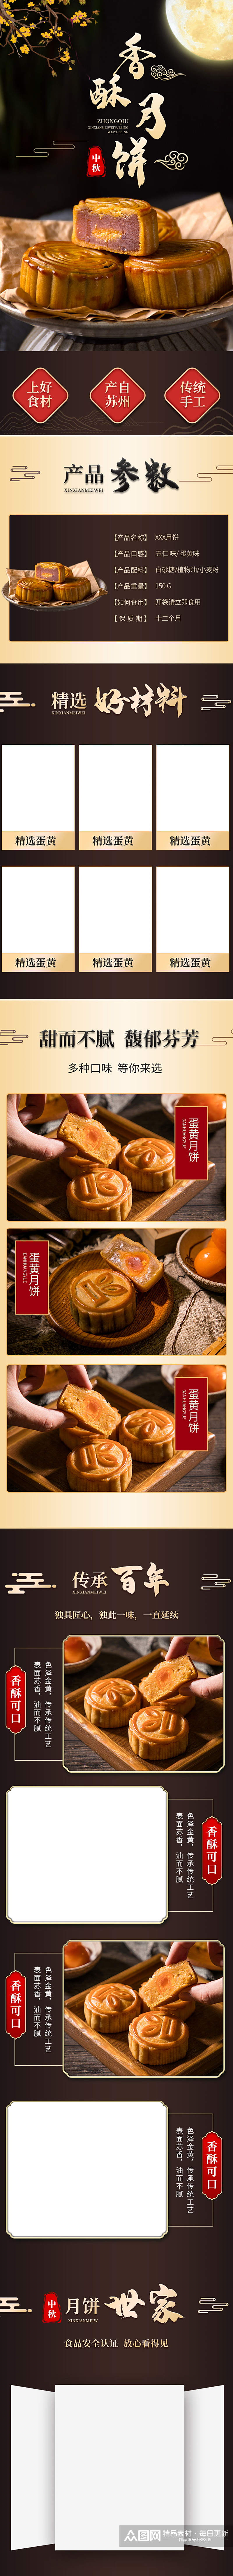 淘宝食品茶饮中秋节月饼详情页模板素材